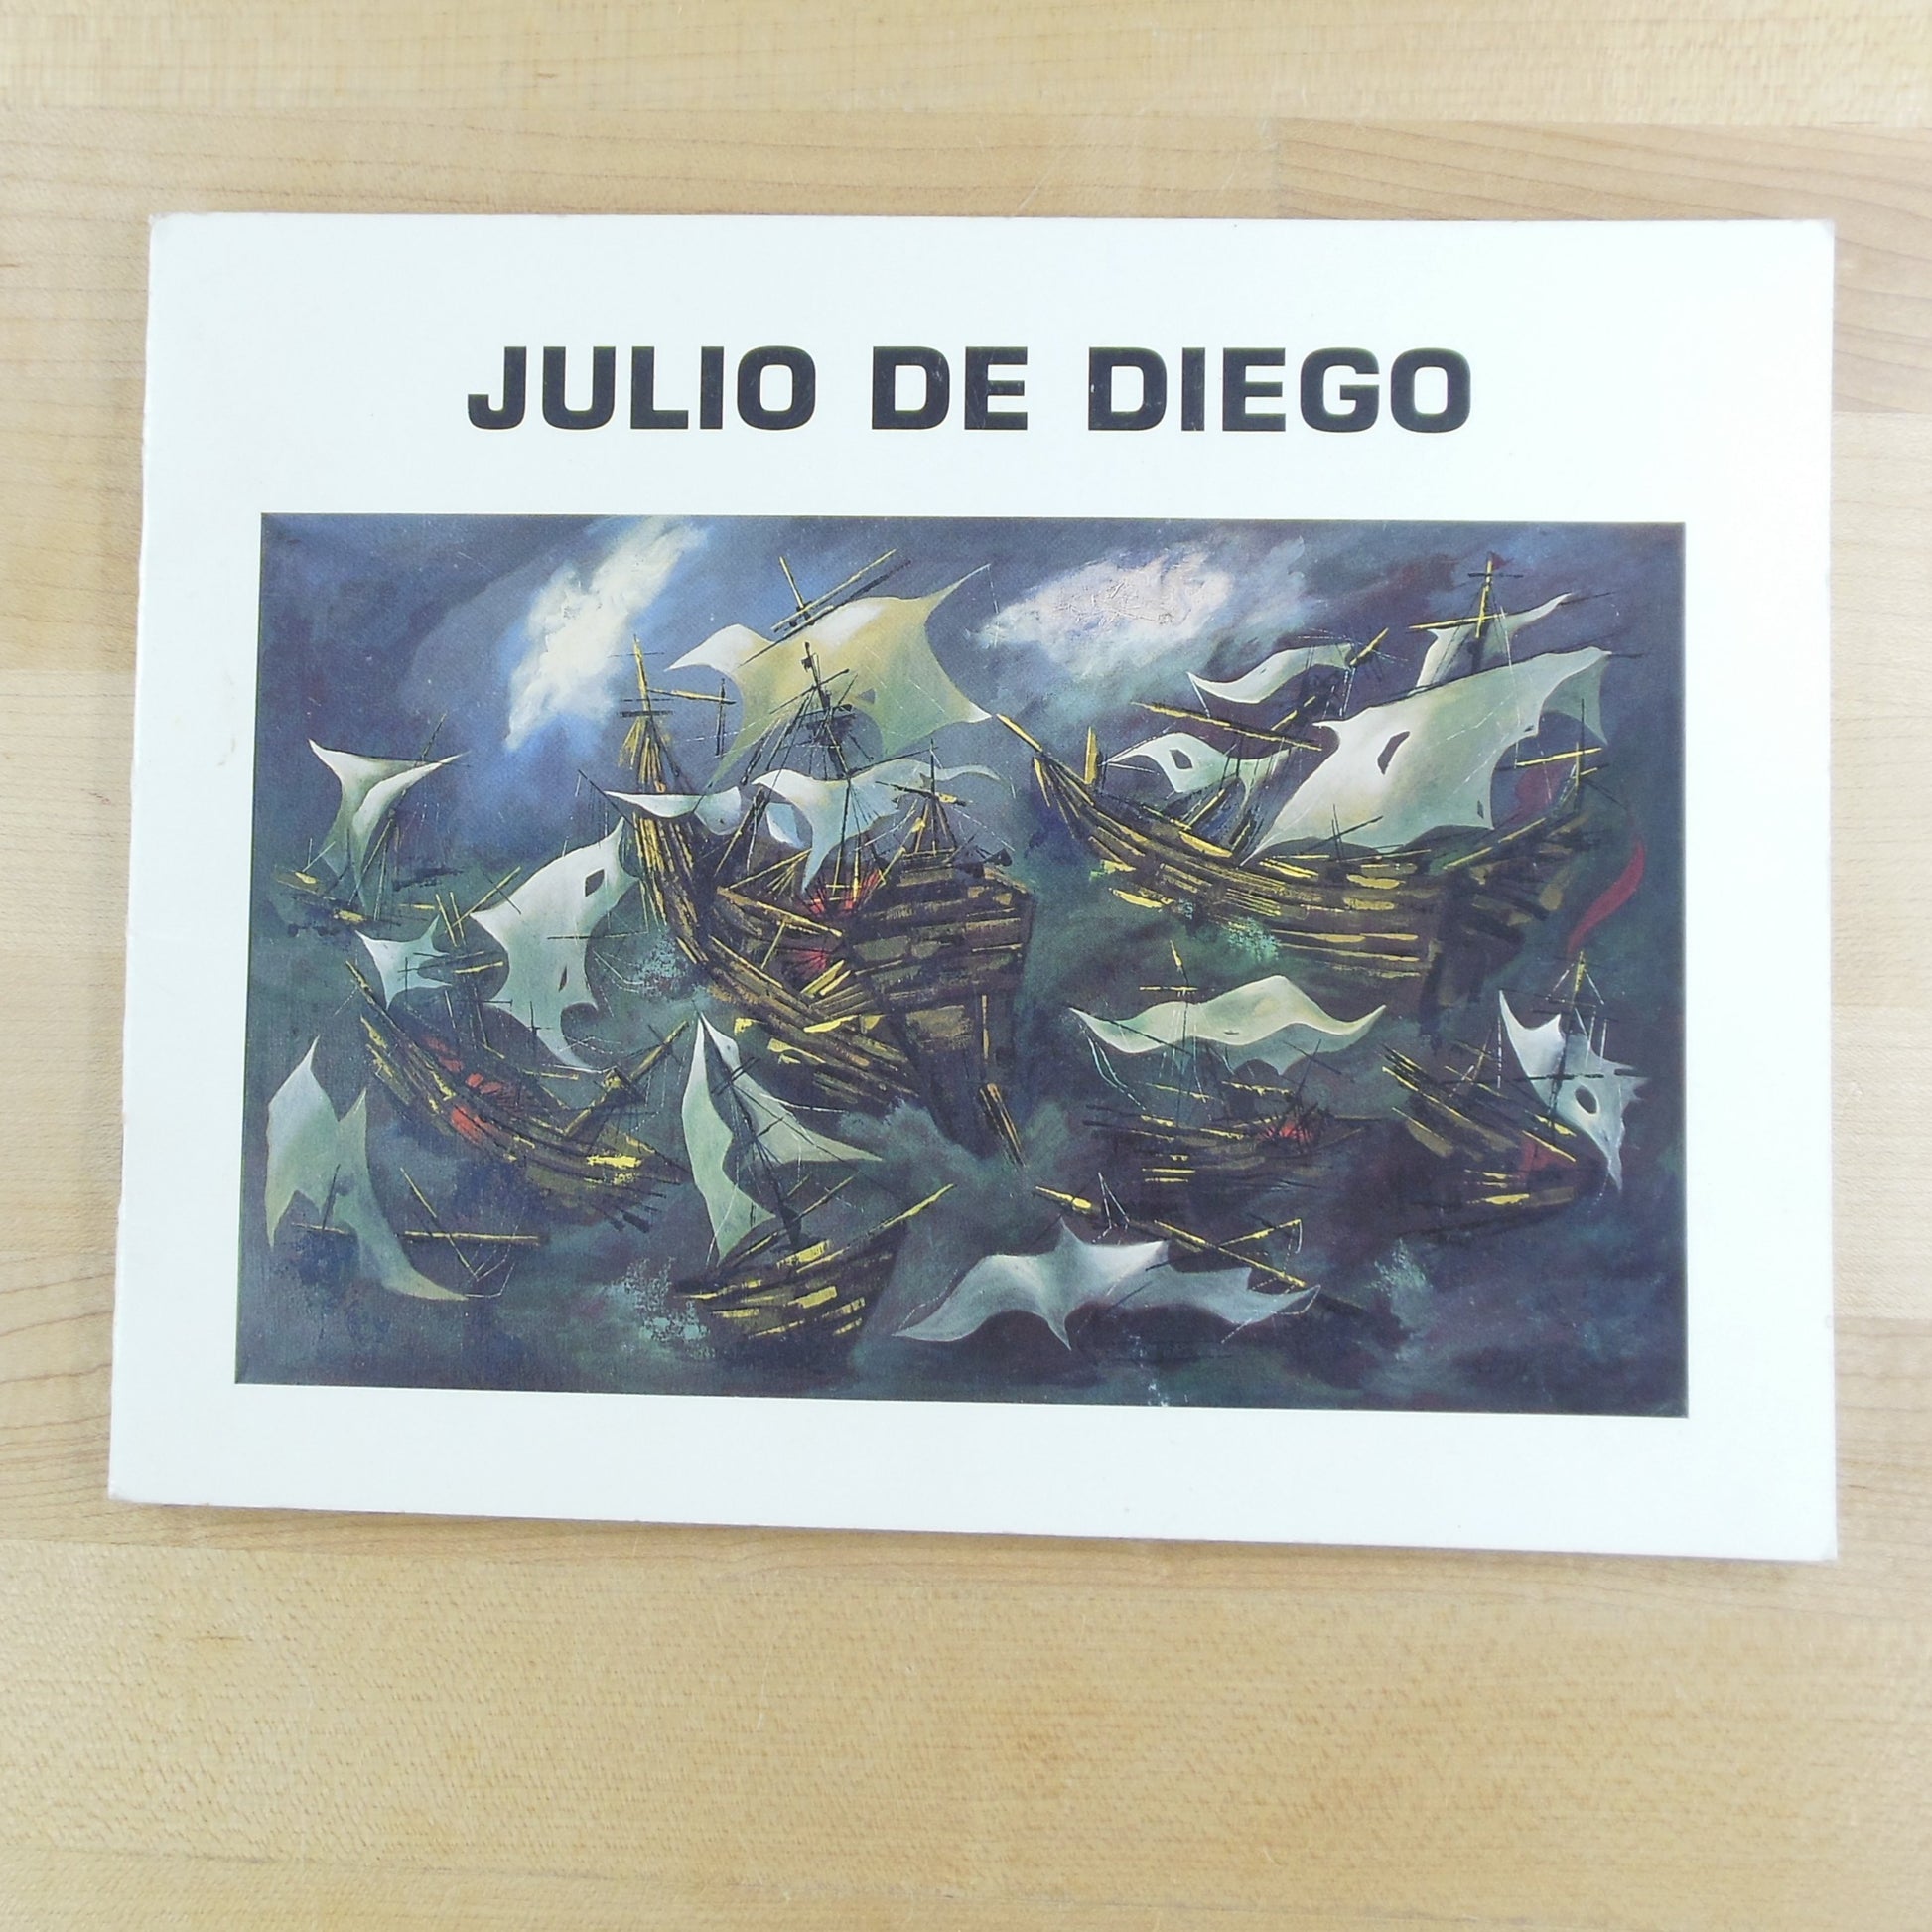 Julio de Deigo Paintings Exhibition Gallery Catalog 1996 Corbino Galleries